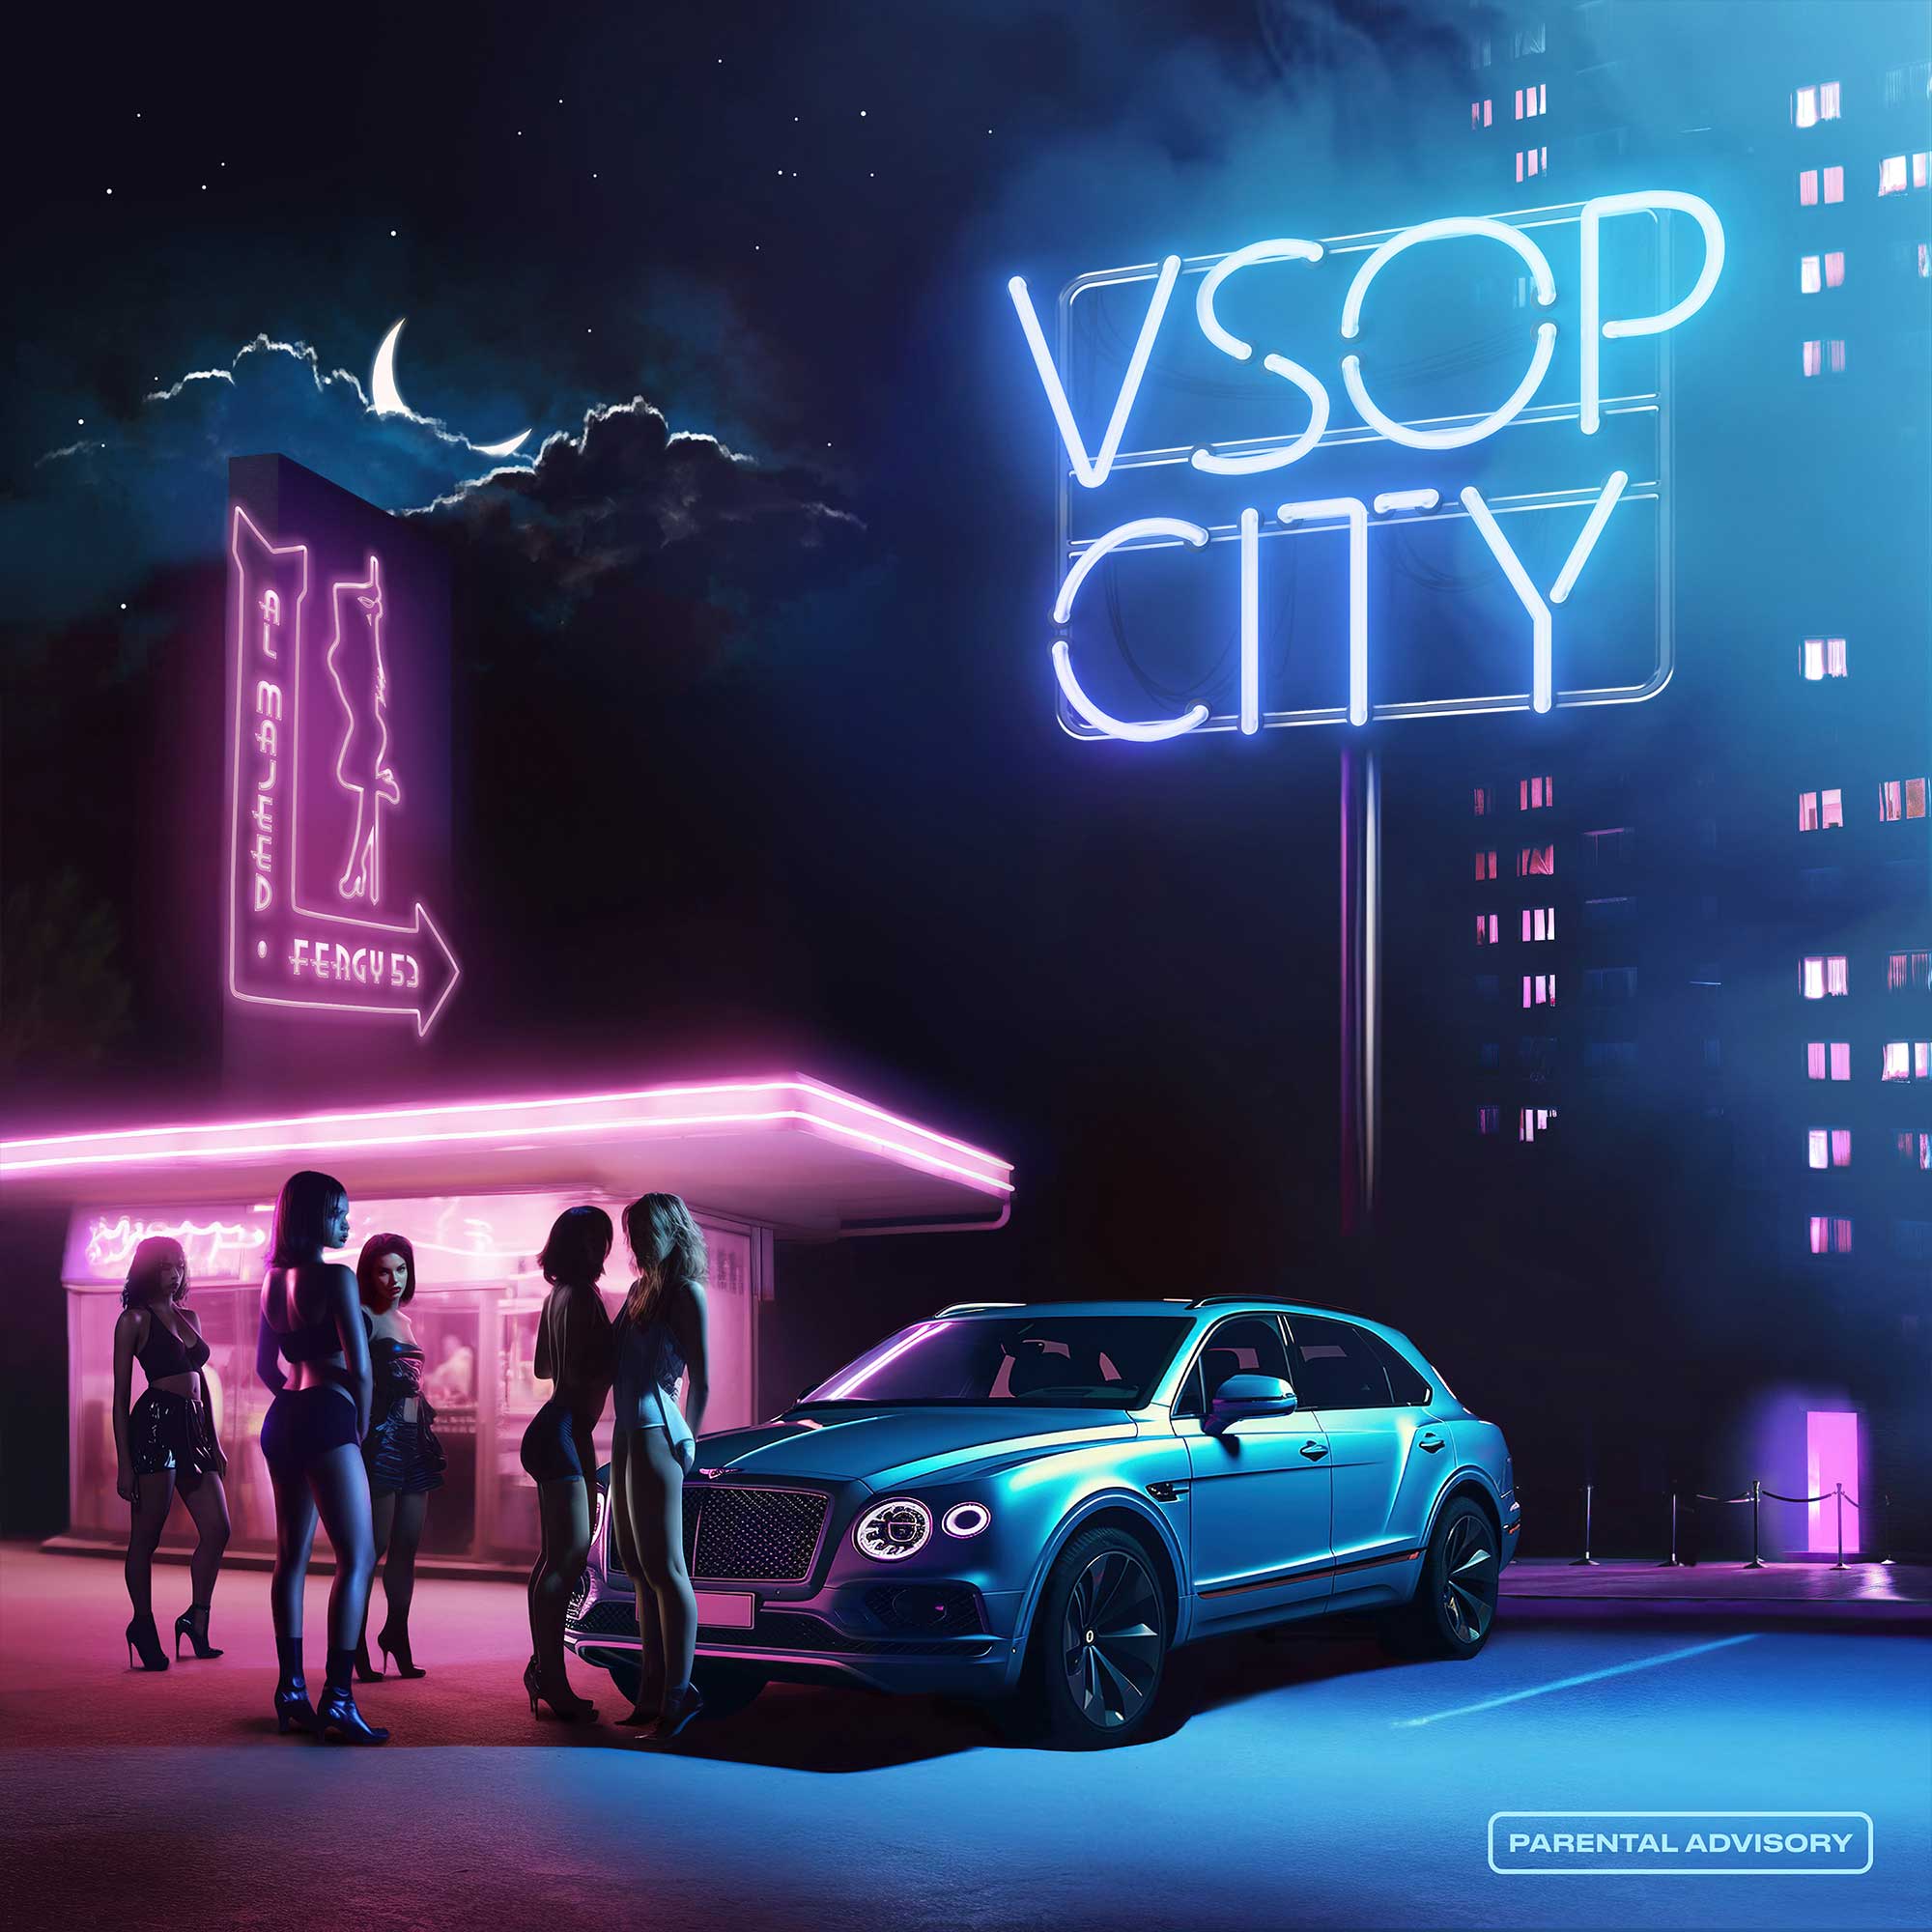 VSOP City